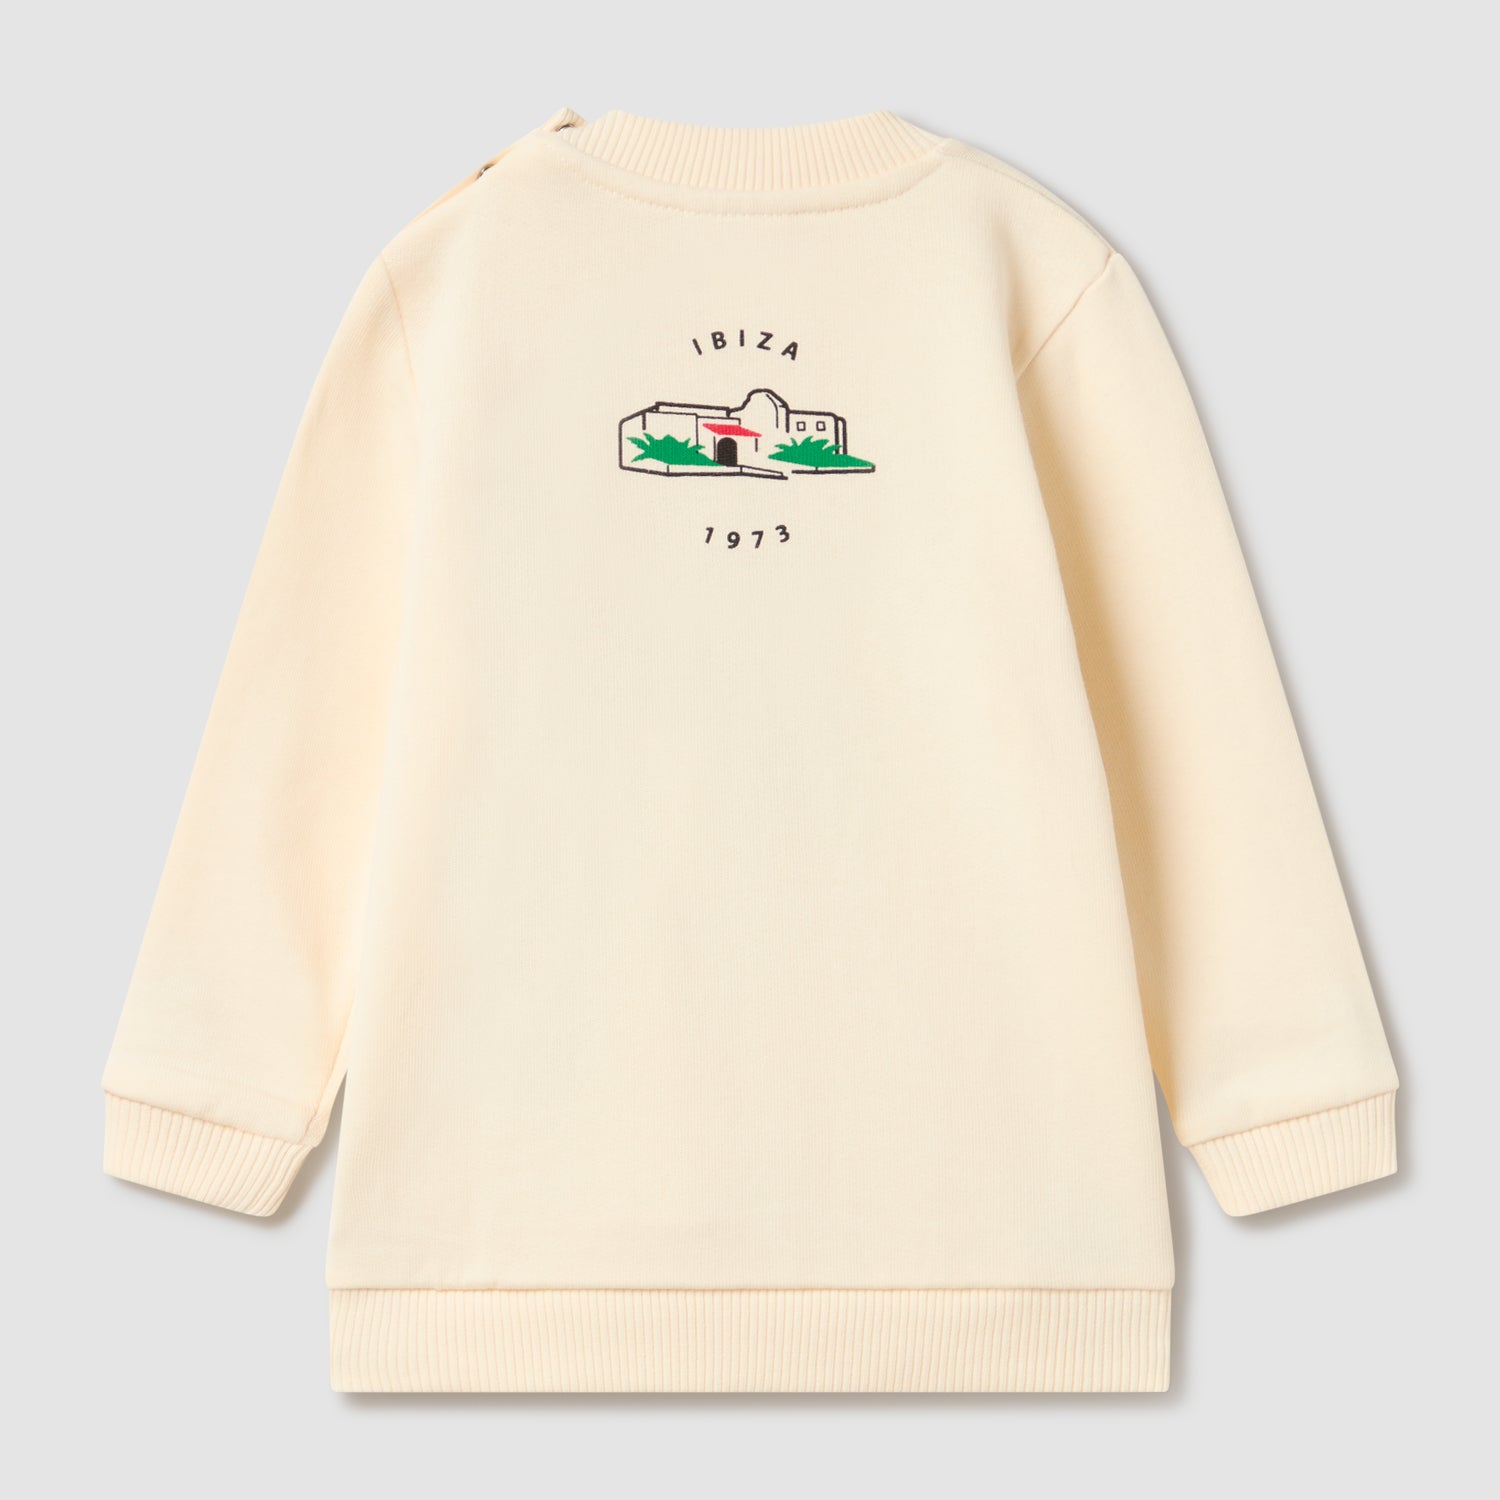 Casita Pacha Baby-Sweatshirt